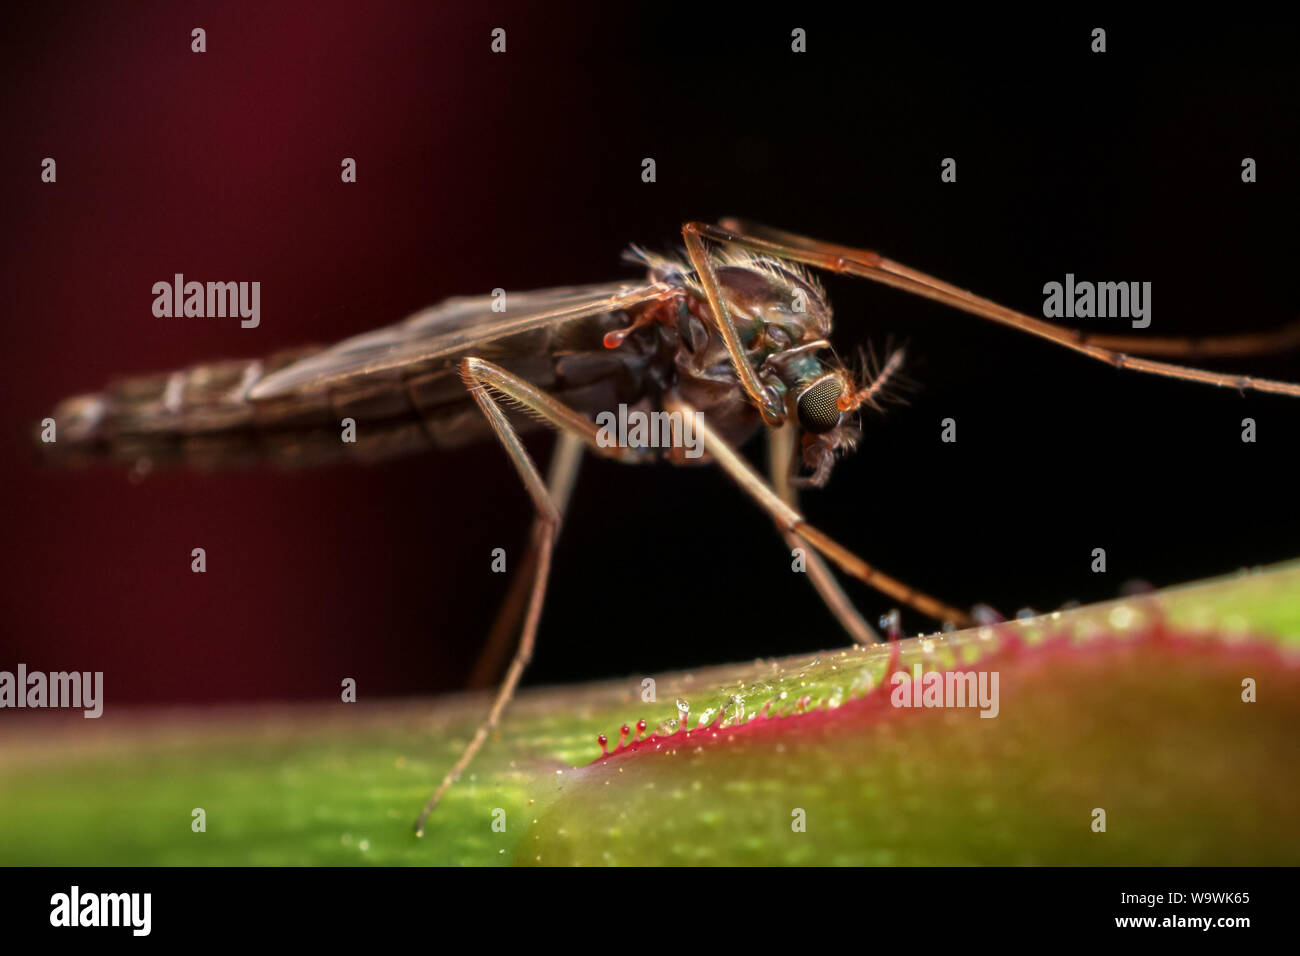 Midge a atterri sur une tige de rose, close-up de l'insecte Banque D'Images